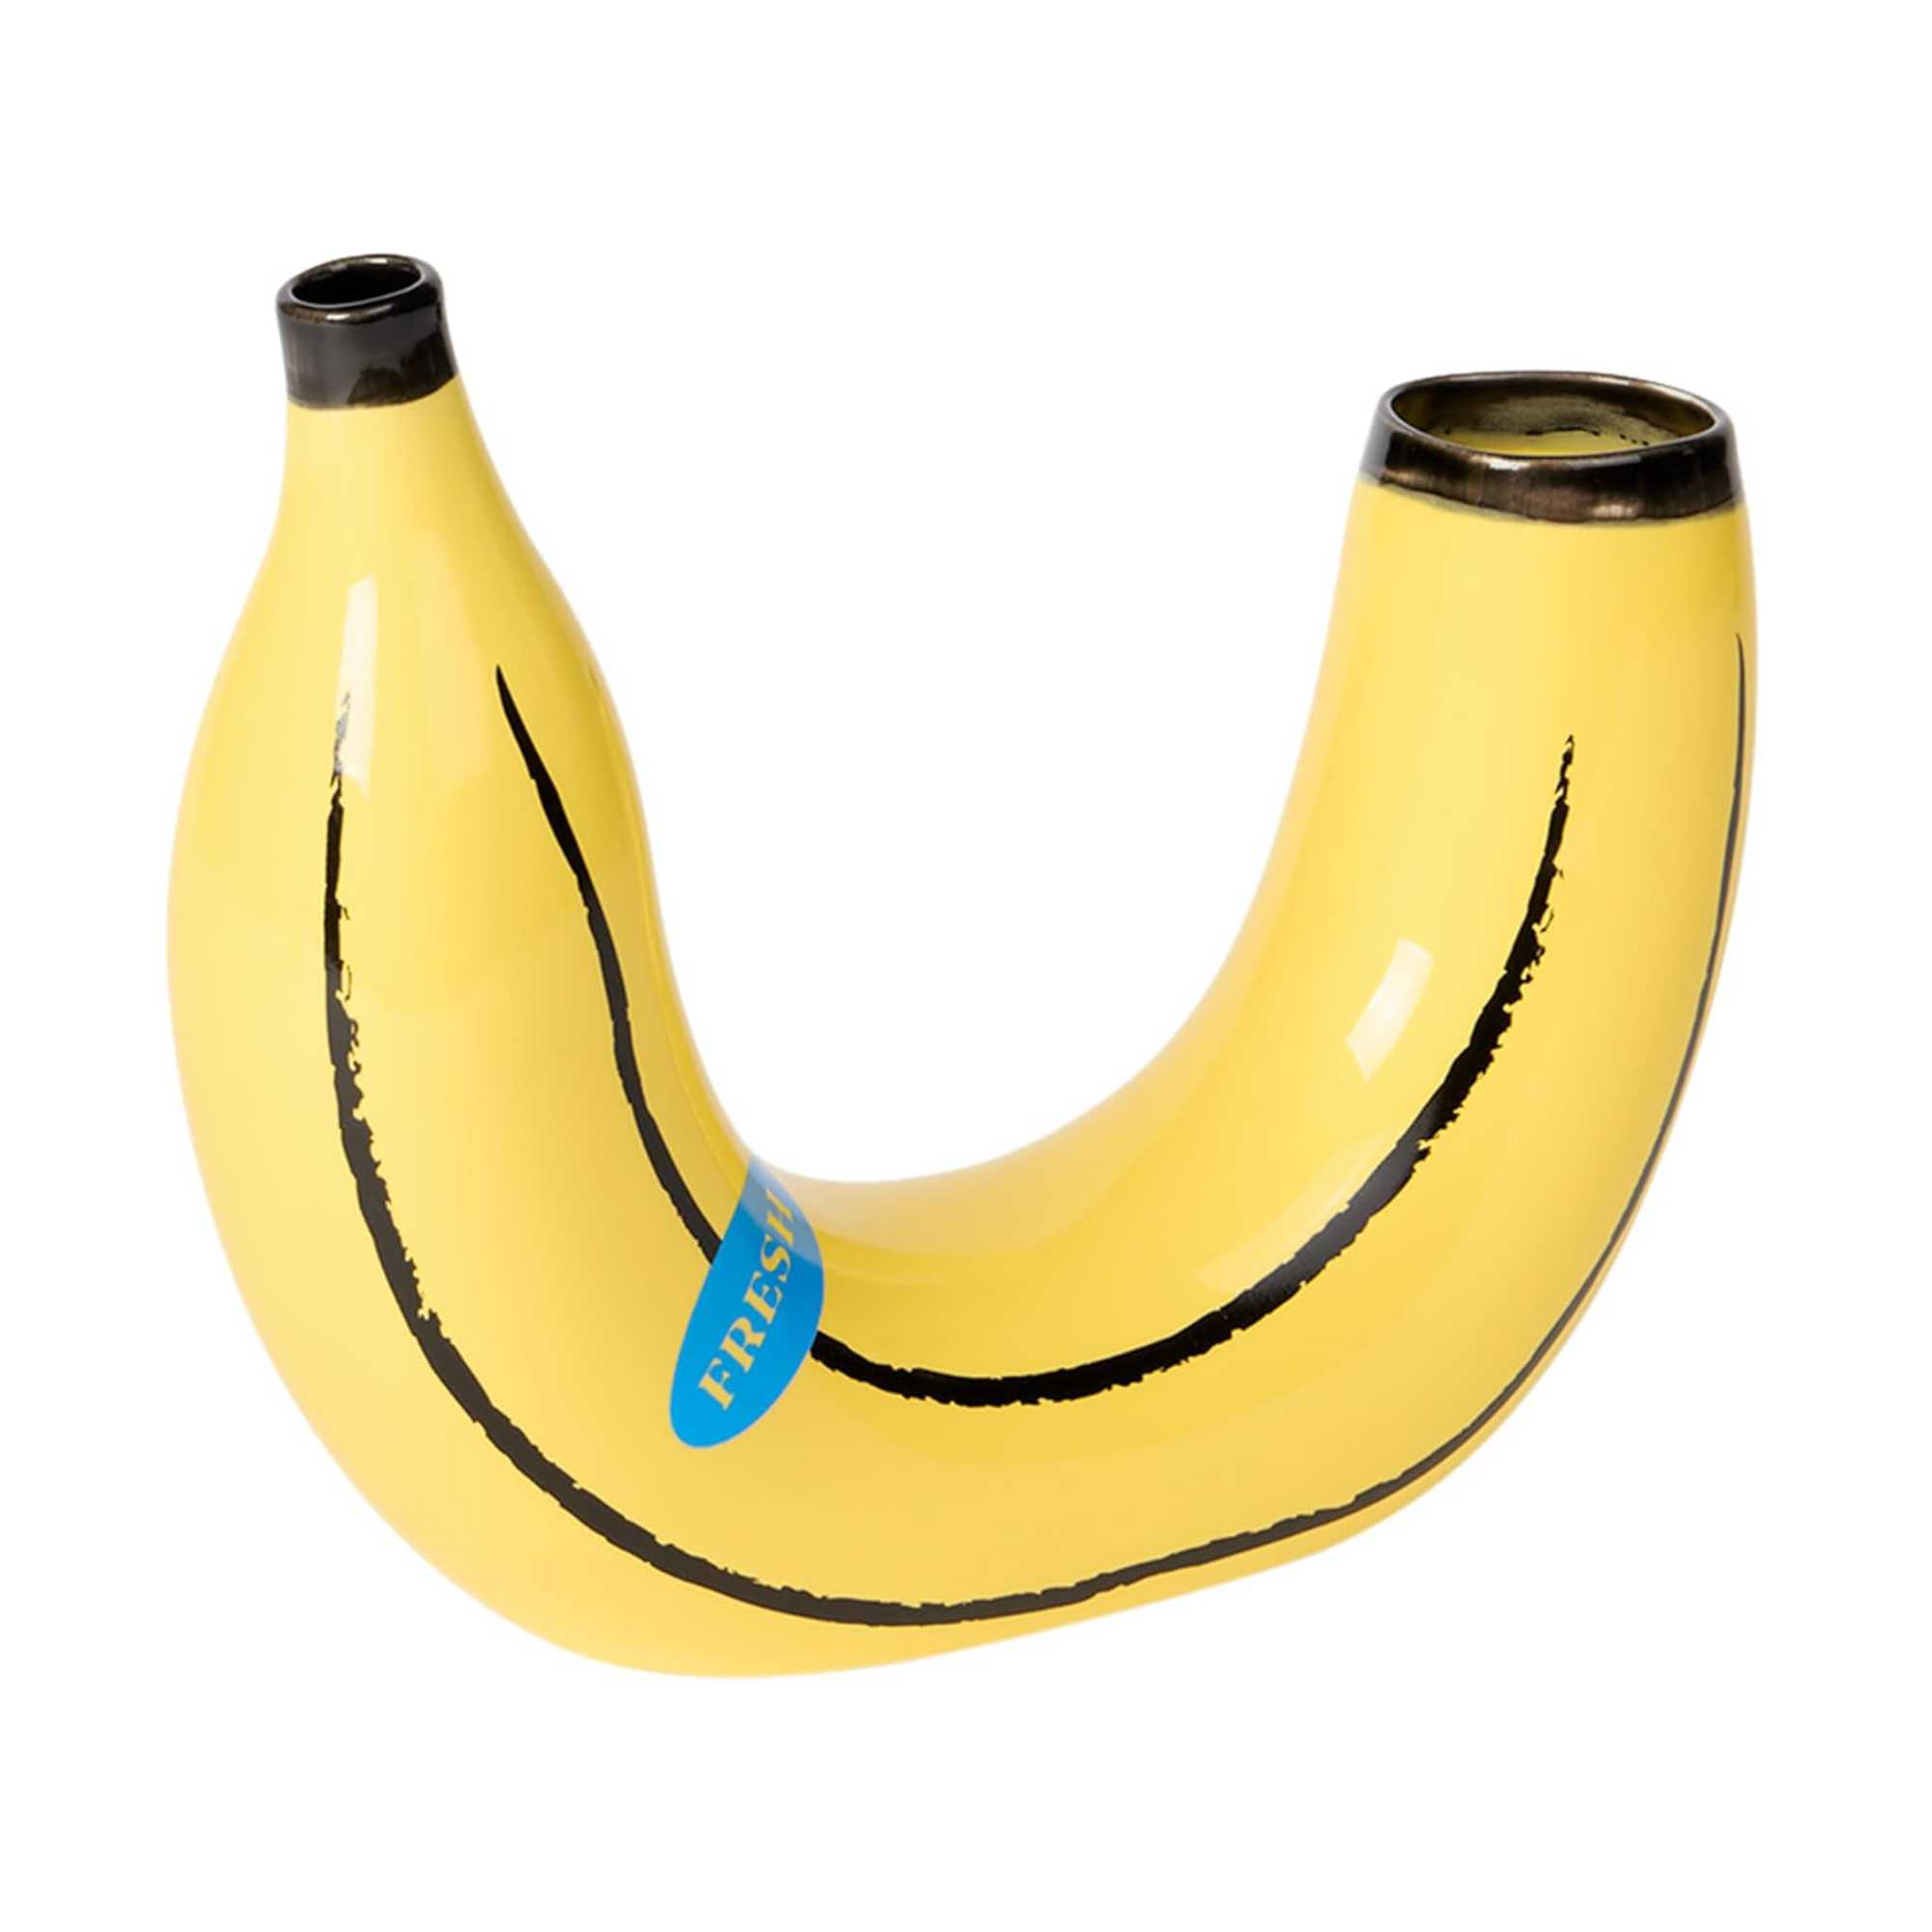 Doiy LUND-STOUGAARD banana vase